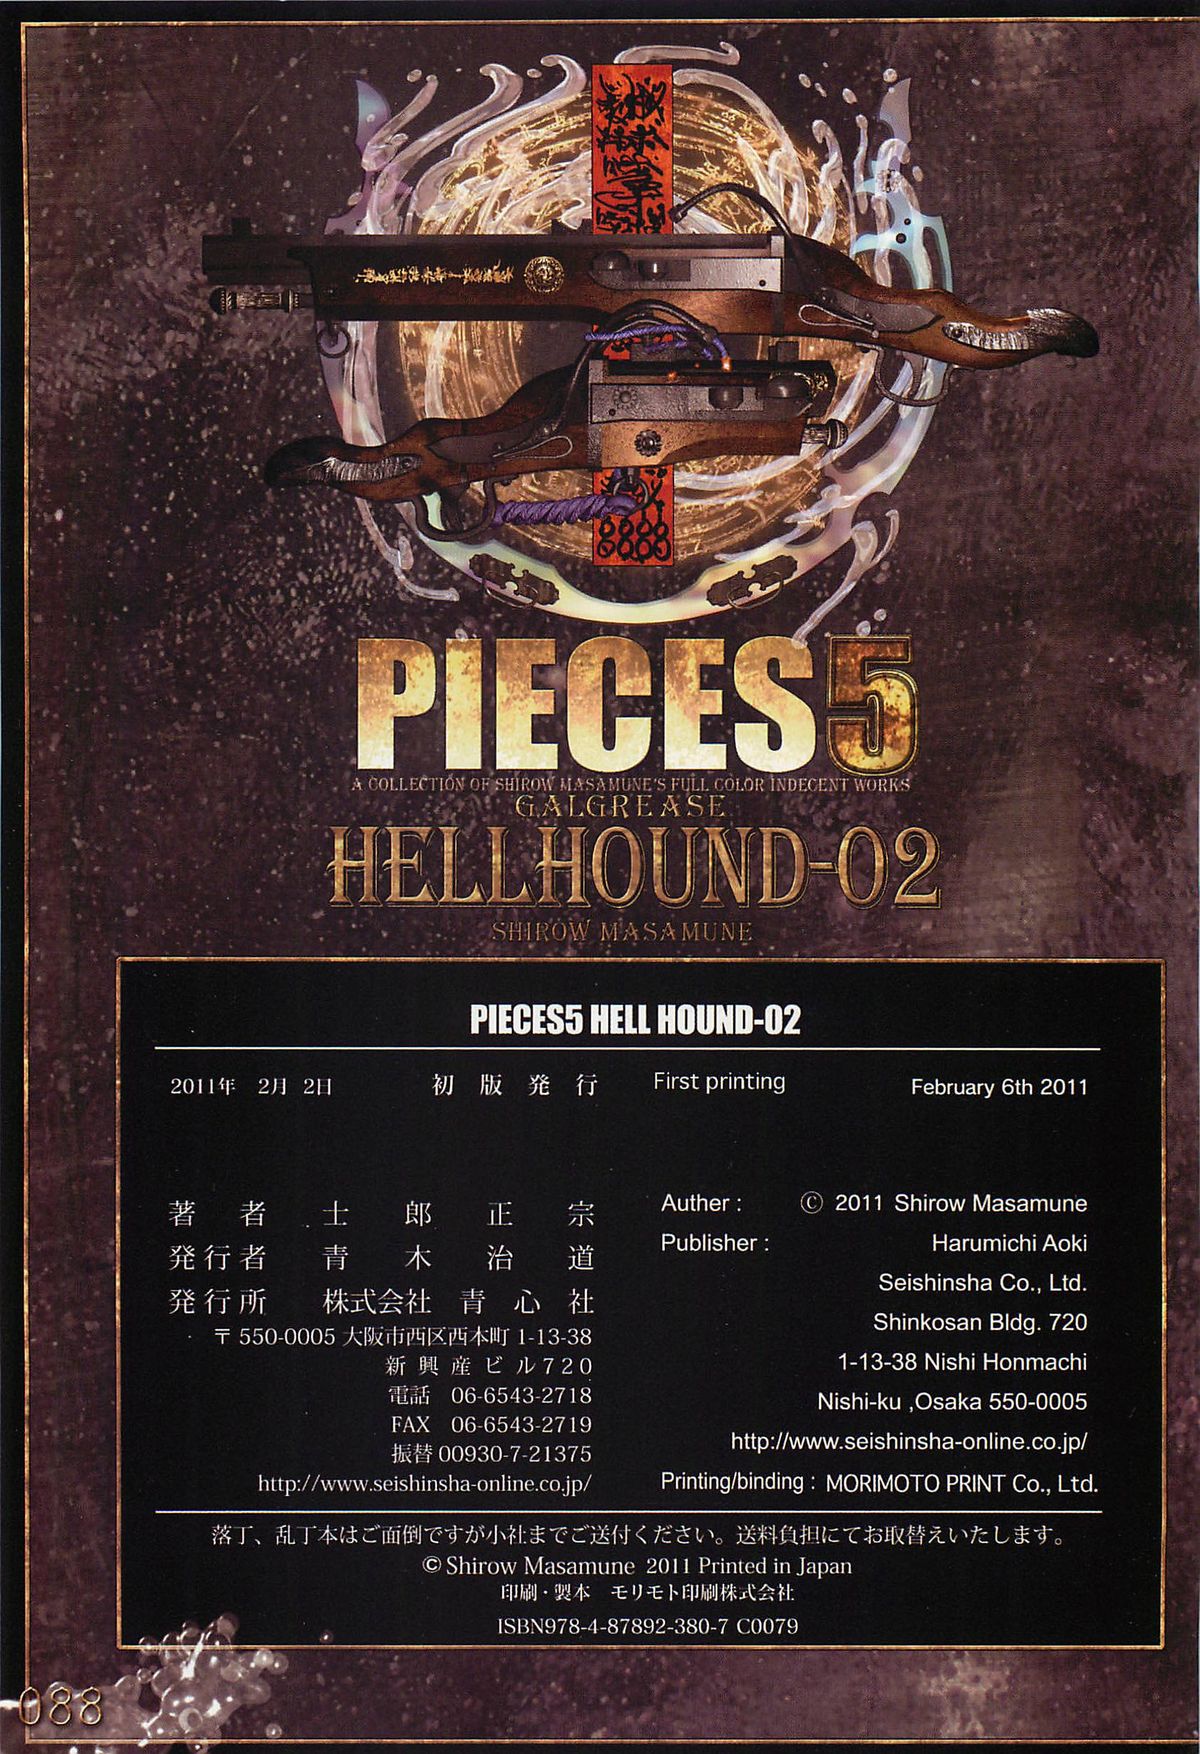 [Masamune Shirow] Pieces 5 Hellhound-02 [士郎正宗] PIECES5 HELLHOUND-02